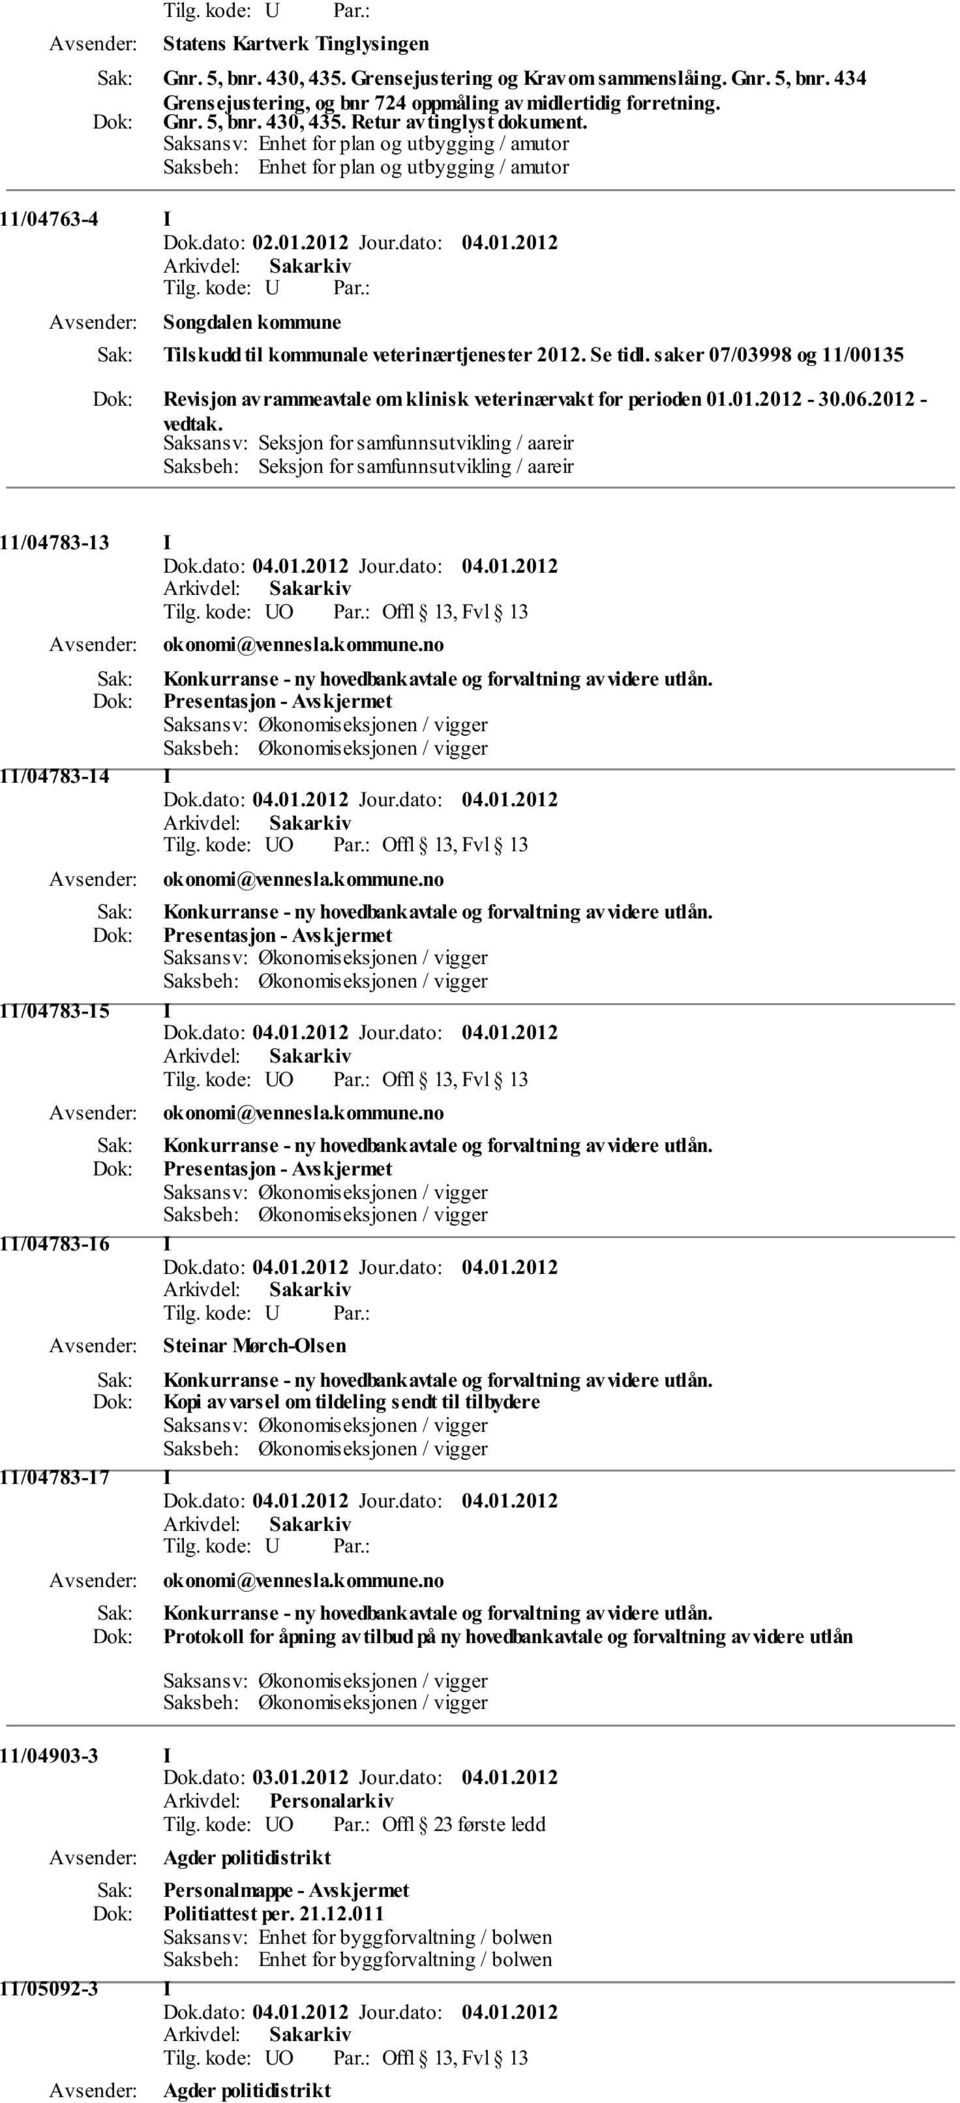 saker 07/03998 og 11/00135 Revisjon av rammeavtale om klinisk veterinærvakt for perioden 01.01.2012-30.06.2012 - vedtak.